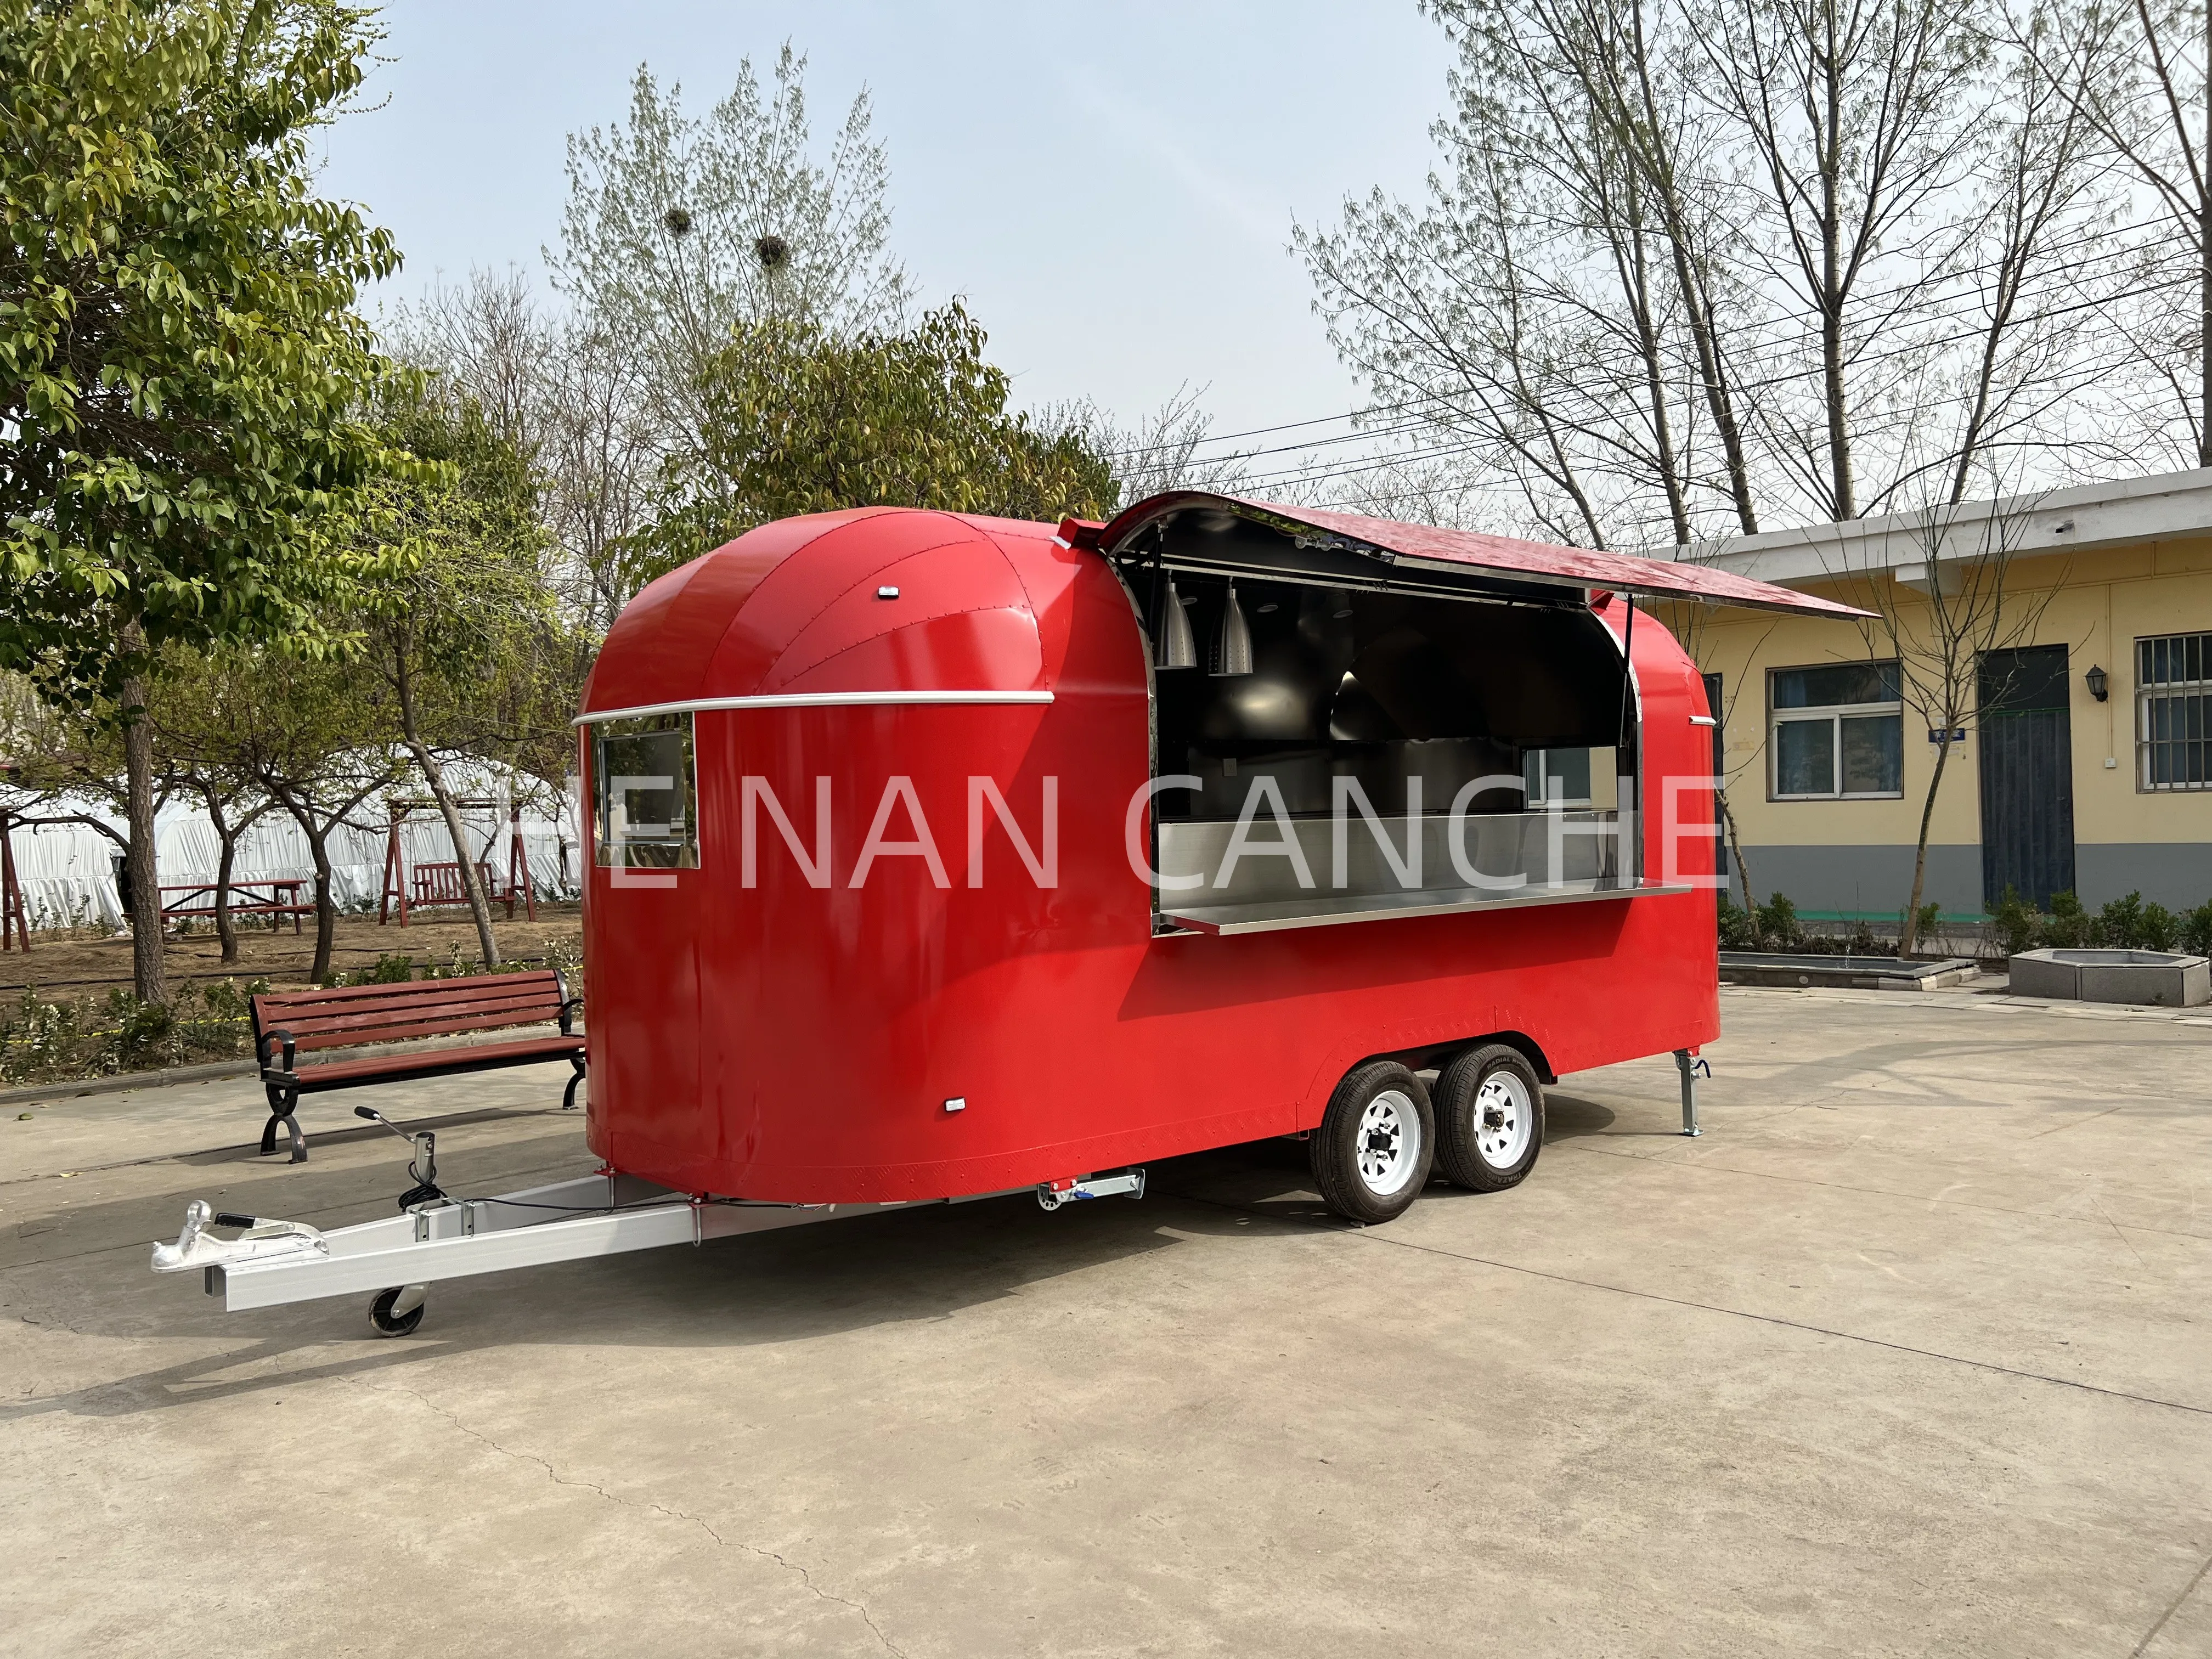 

Фургон и прицепы для еды, полностью оборудованный мобильный фургон для хот-догов, кофе, мороженого, фаст-фургона с полноценной кухней для продажи